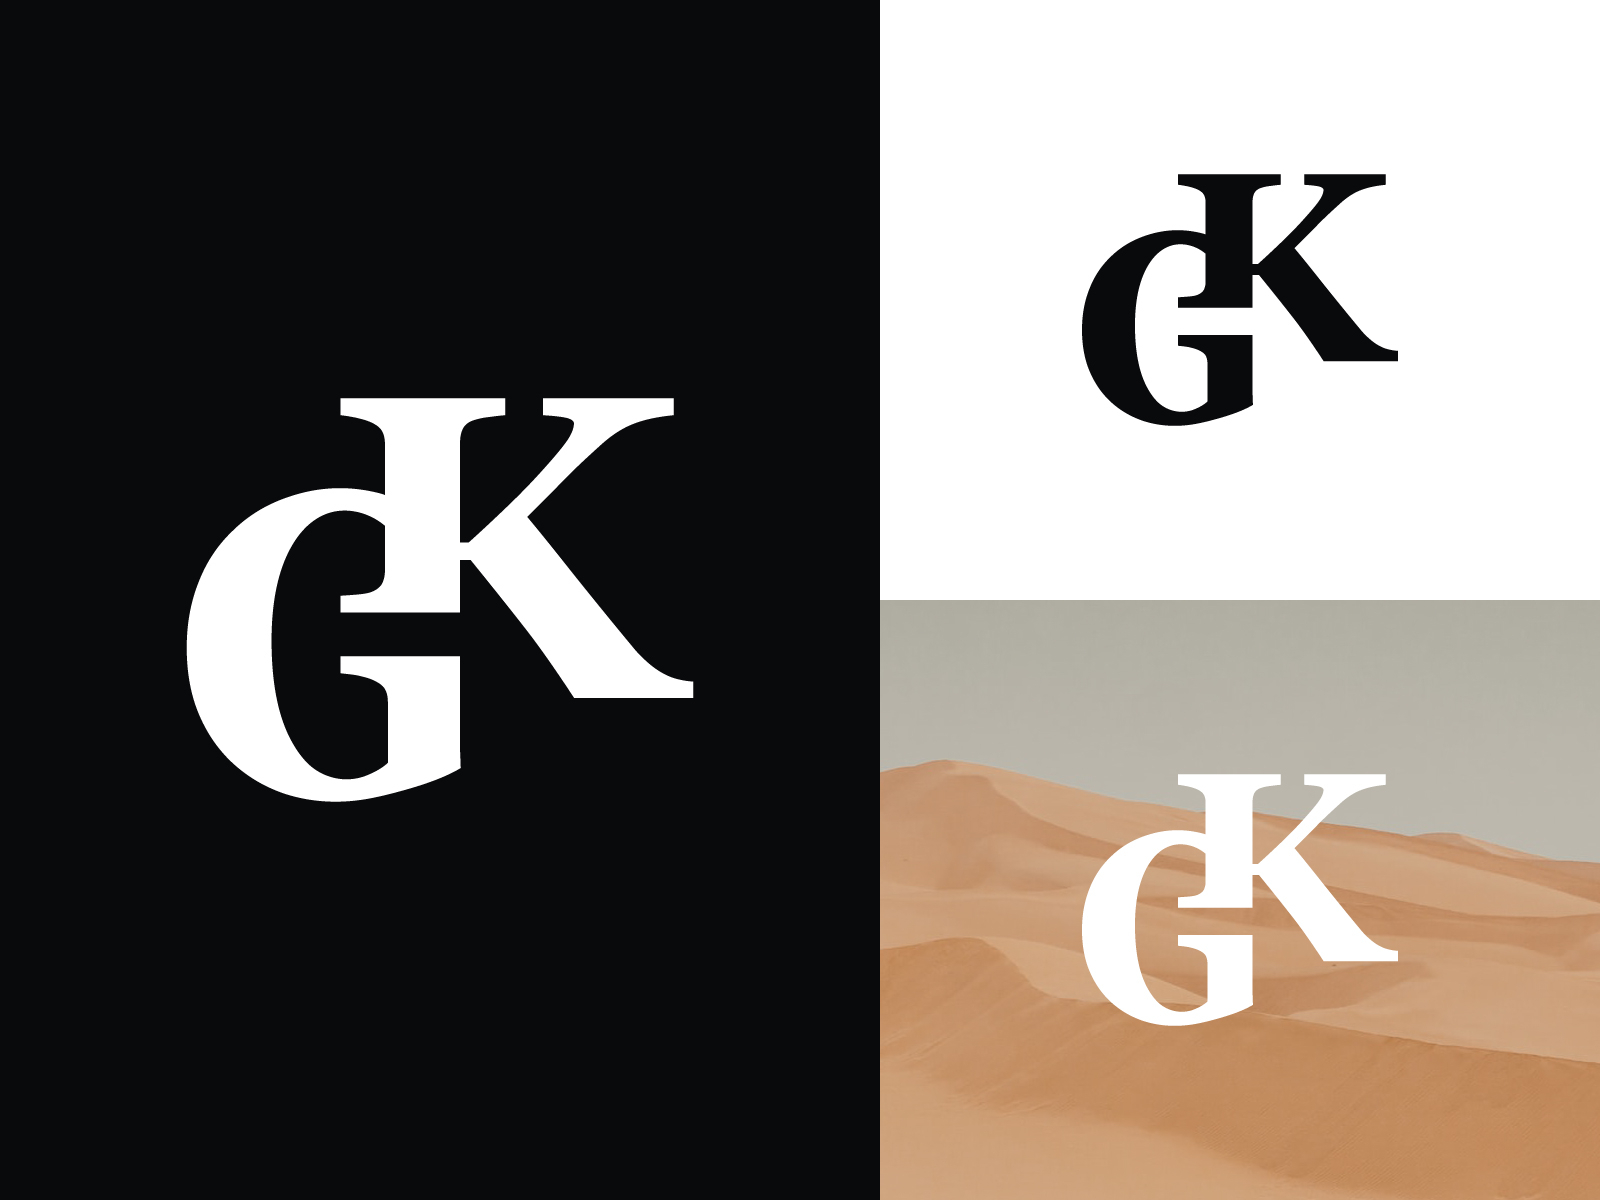 100,000 Gk logo design Vector Images | Depositphotos